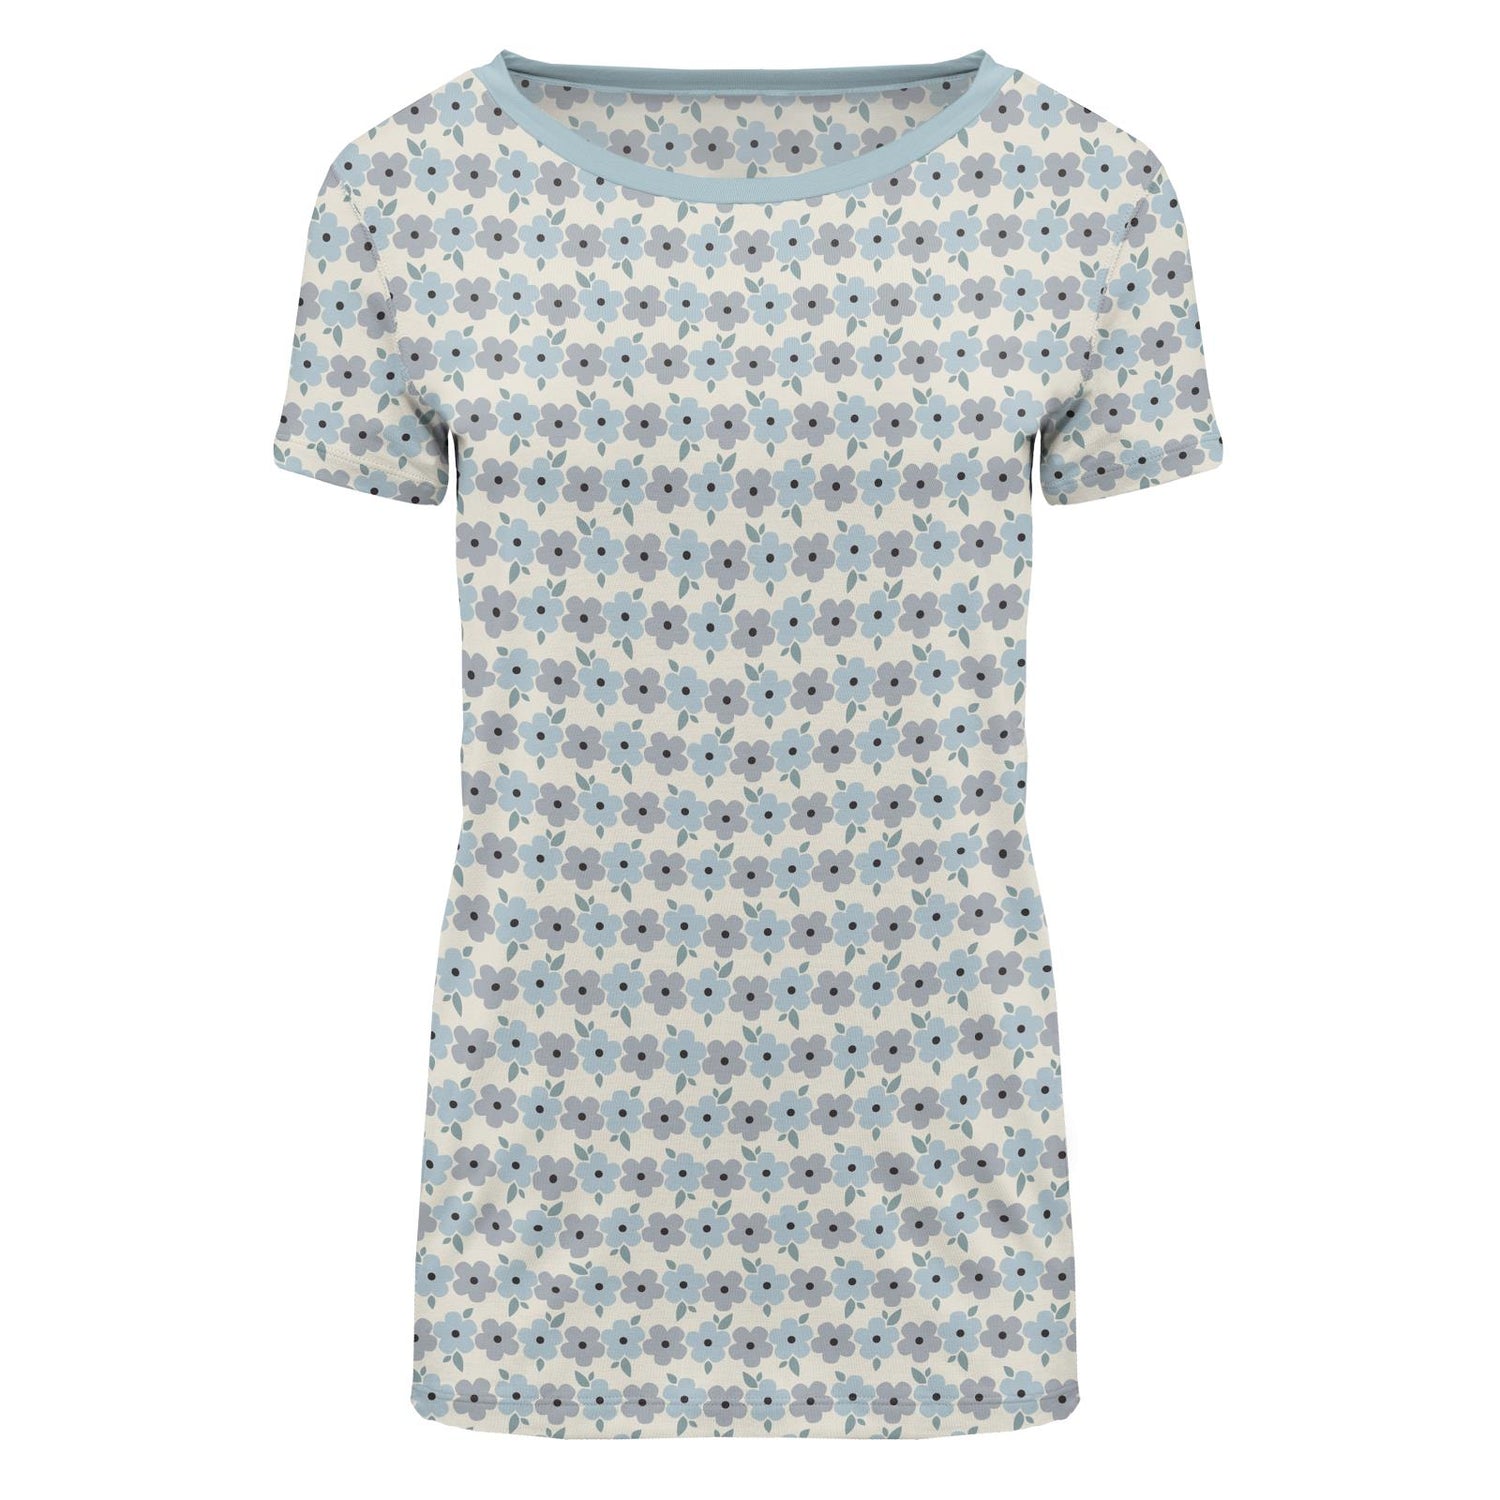 Women's Print Short Sleeve Loosey Goosey Tee in Natural Hydrangea